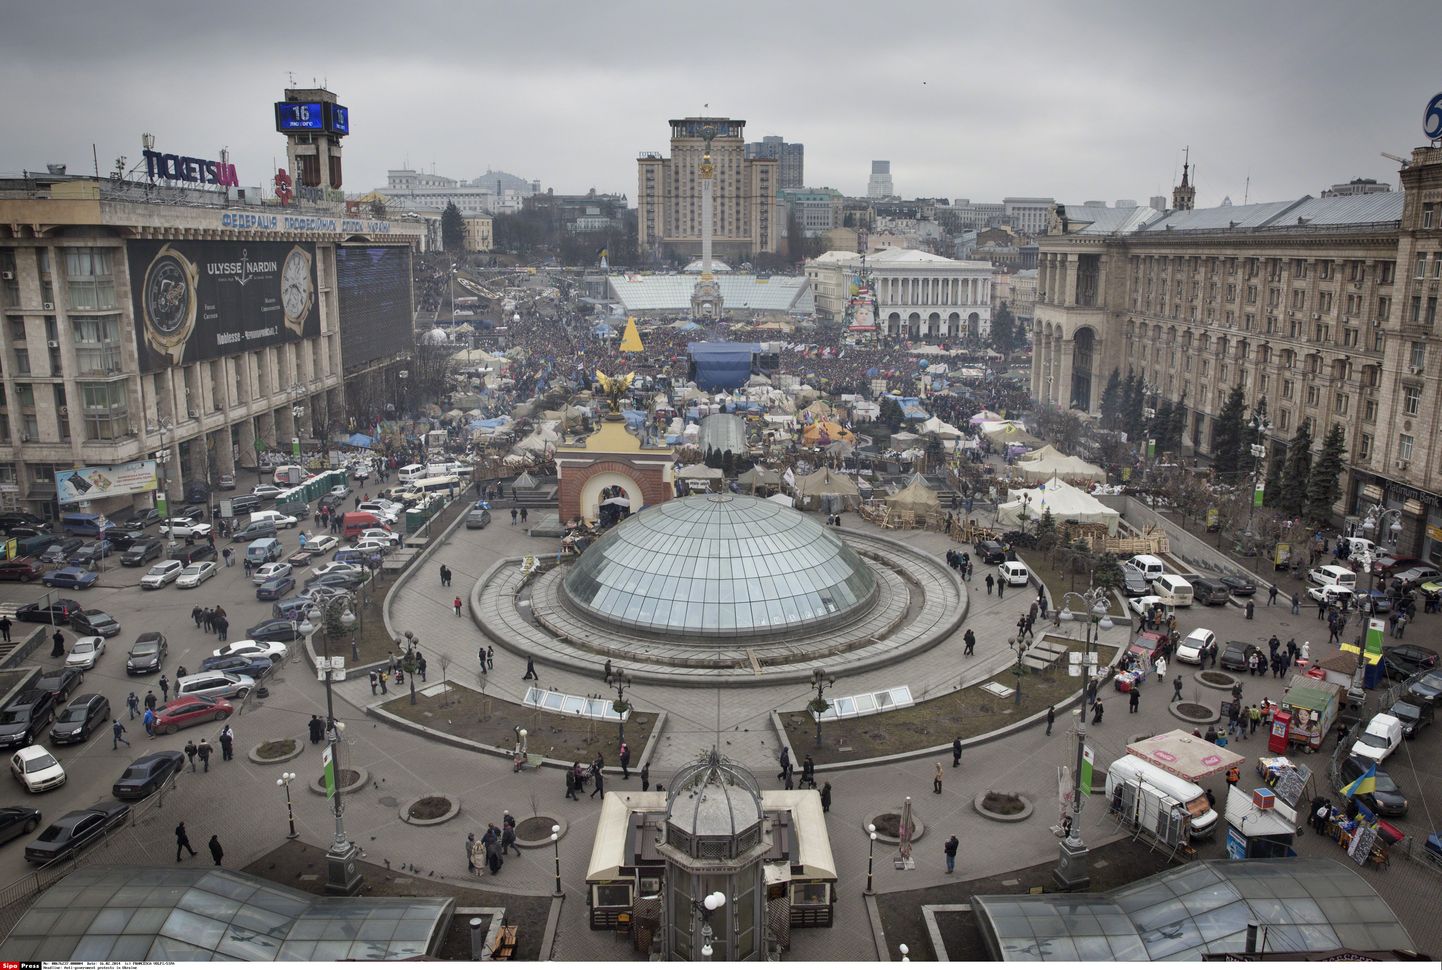 Kiievi kesklinnas asuv Iseseisvuse väljak, mida kutsutakse ka Maidan. Euromaidan tähendab aga eurointegratsiooni pooldajate meeleavaldusi.